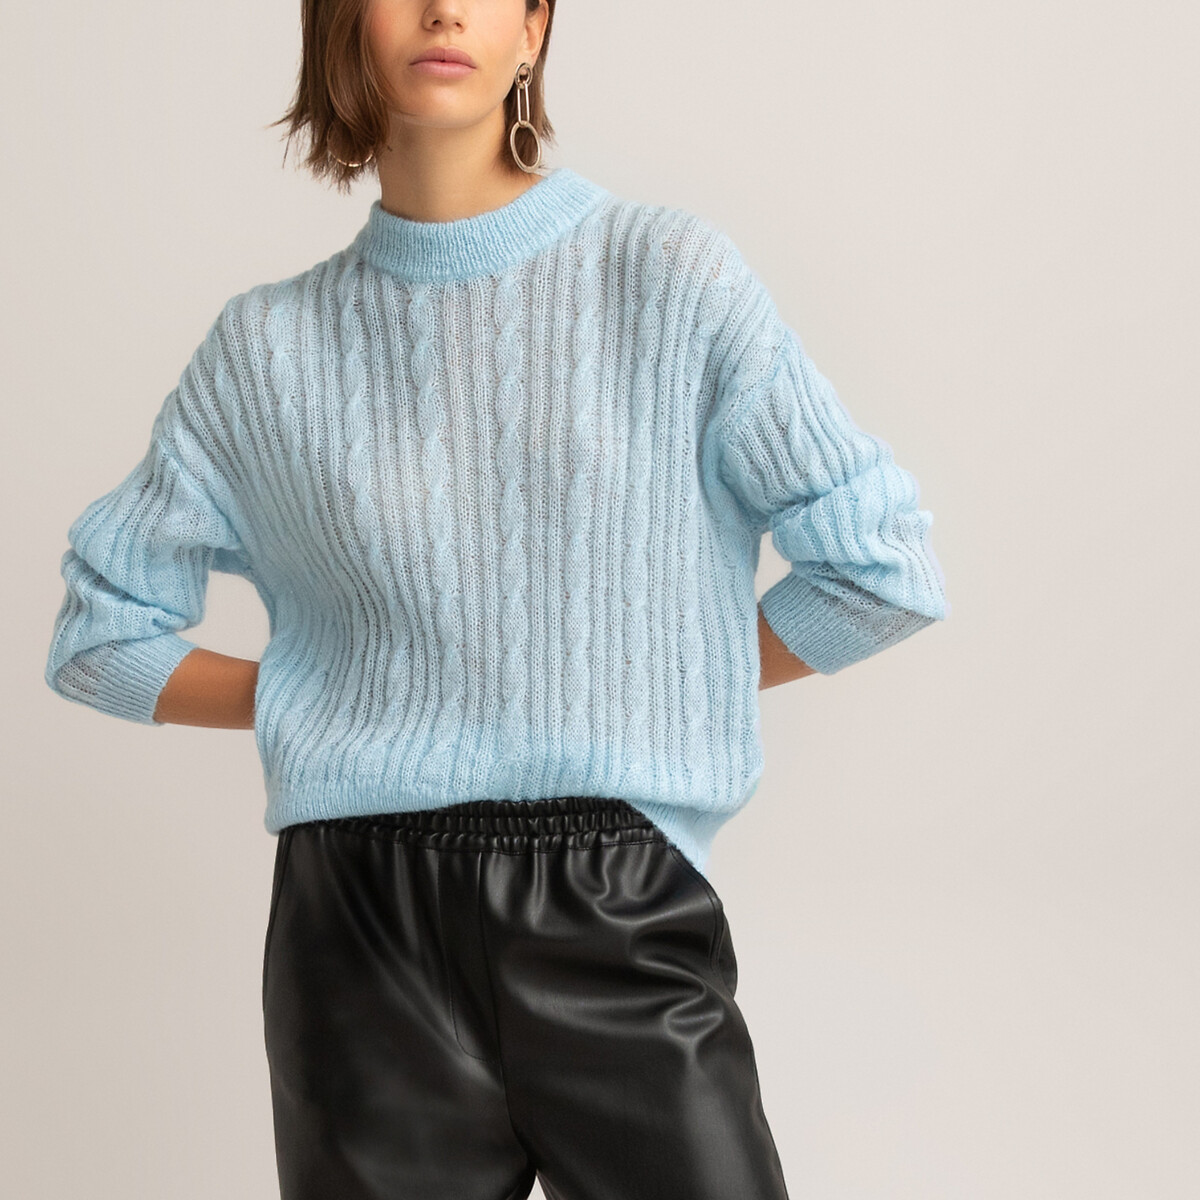 Пуловер La Redoute С круглым вырезом из плотного плетеного трикотажа XL синий, размер XL - фото 2